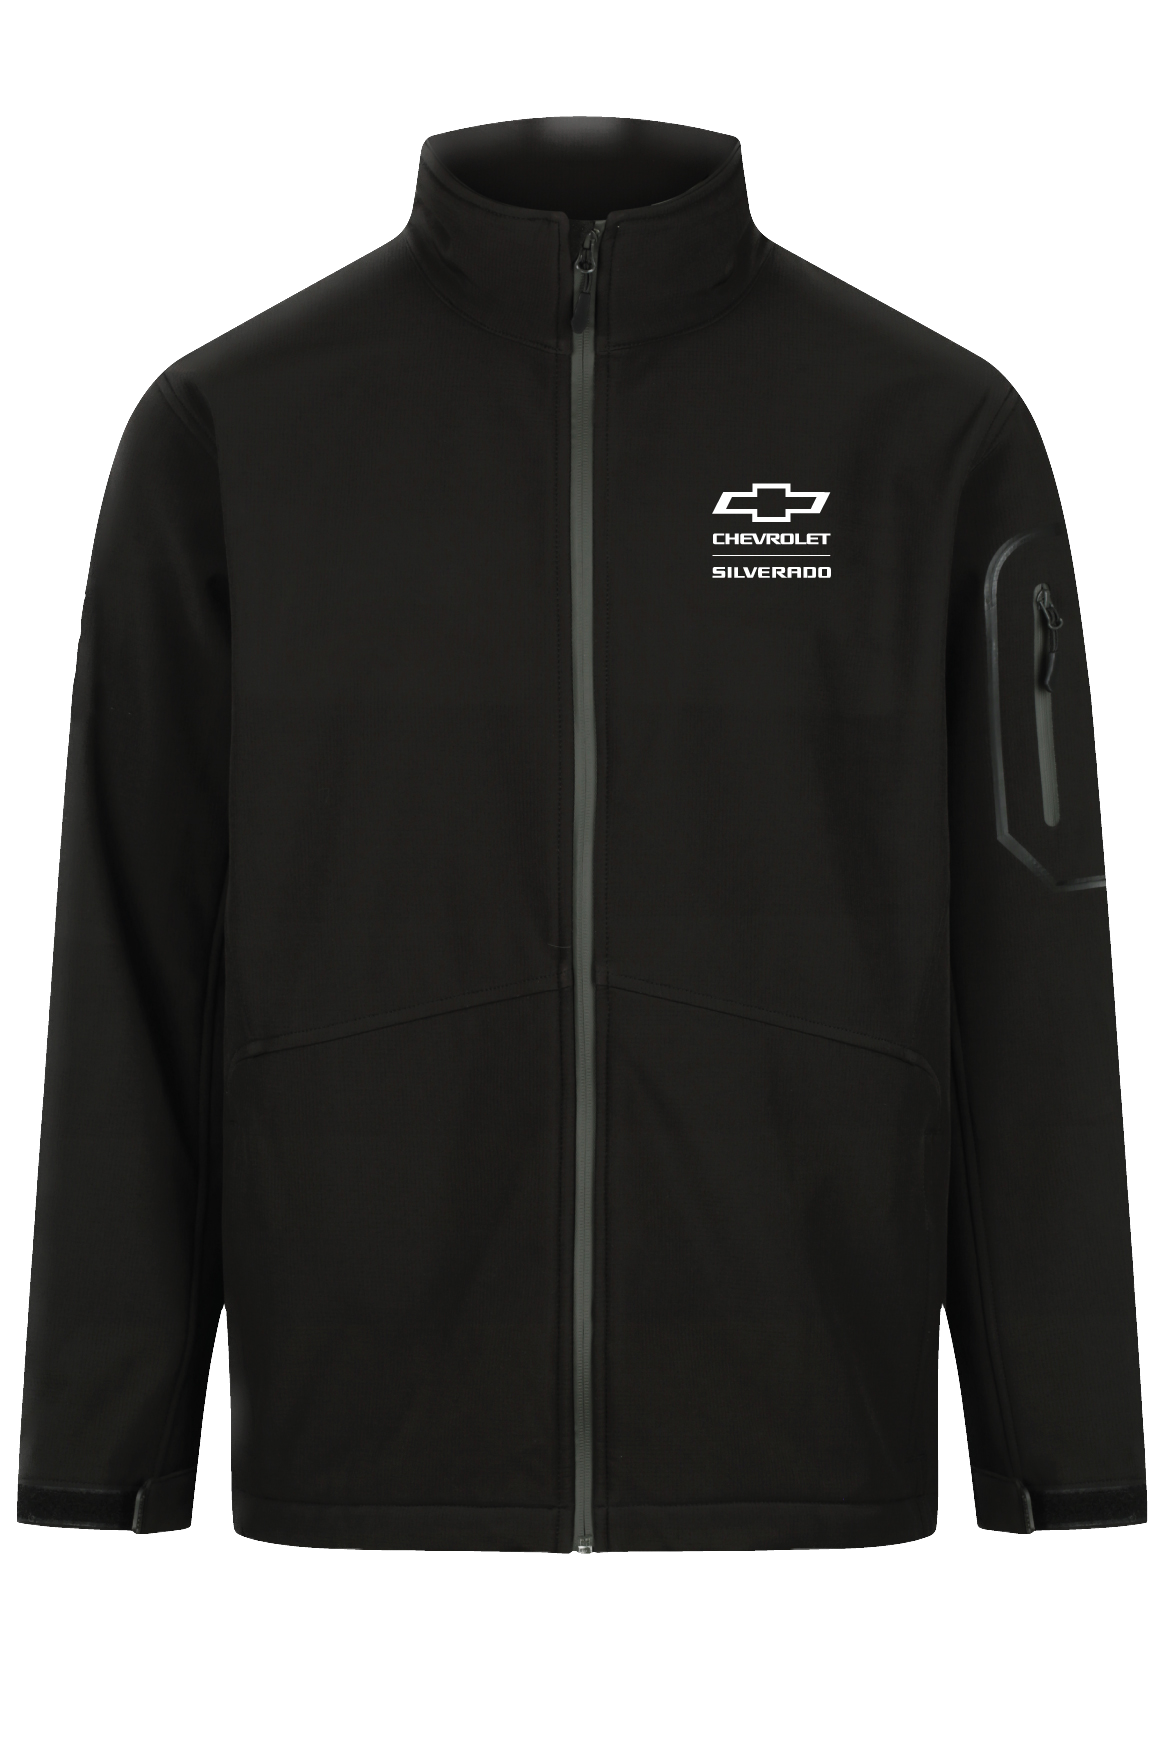 Silverado Racing Jacket – The Distributor Company